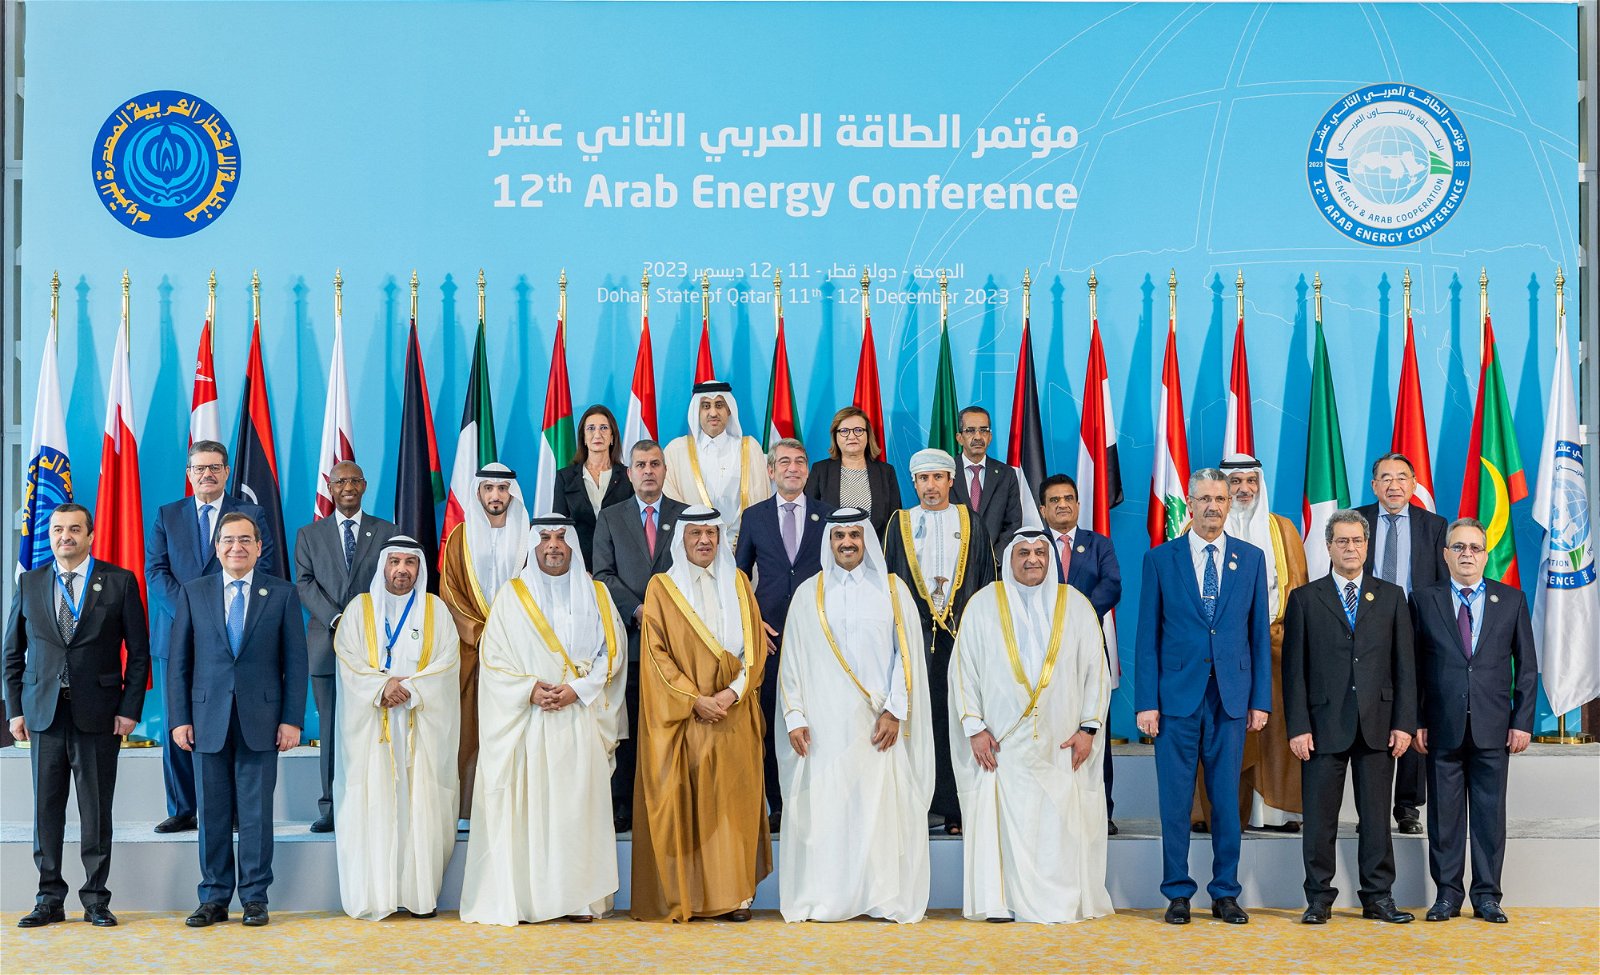 联合国气候峰会在迪拜举行之际，OPEC的阿拉伯国家能源部长周一聚集在多哈，参加第12届阿拉伯能源会议。（图取自路透社）